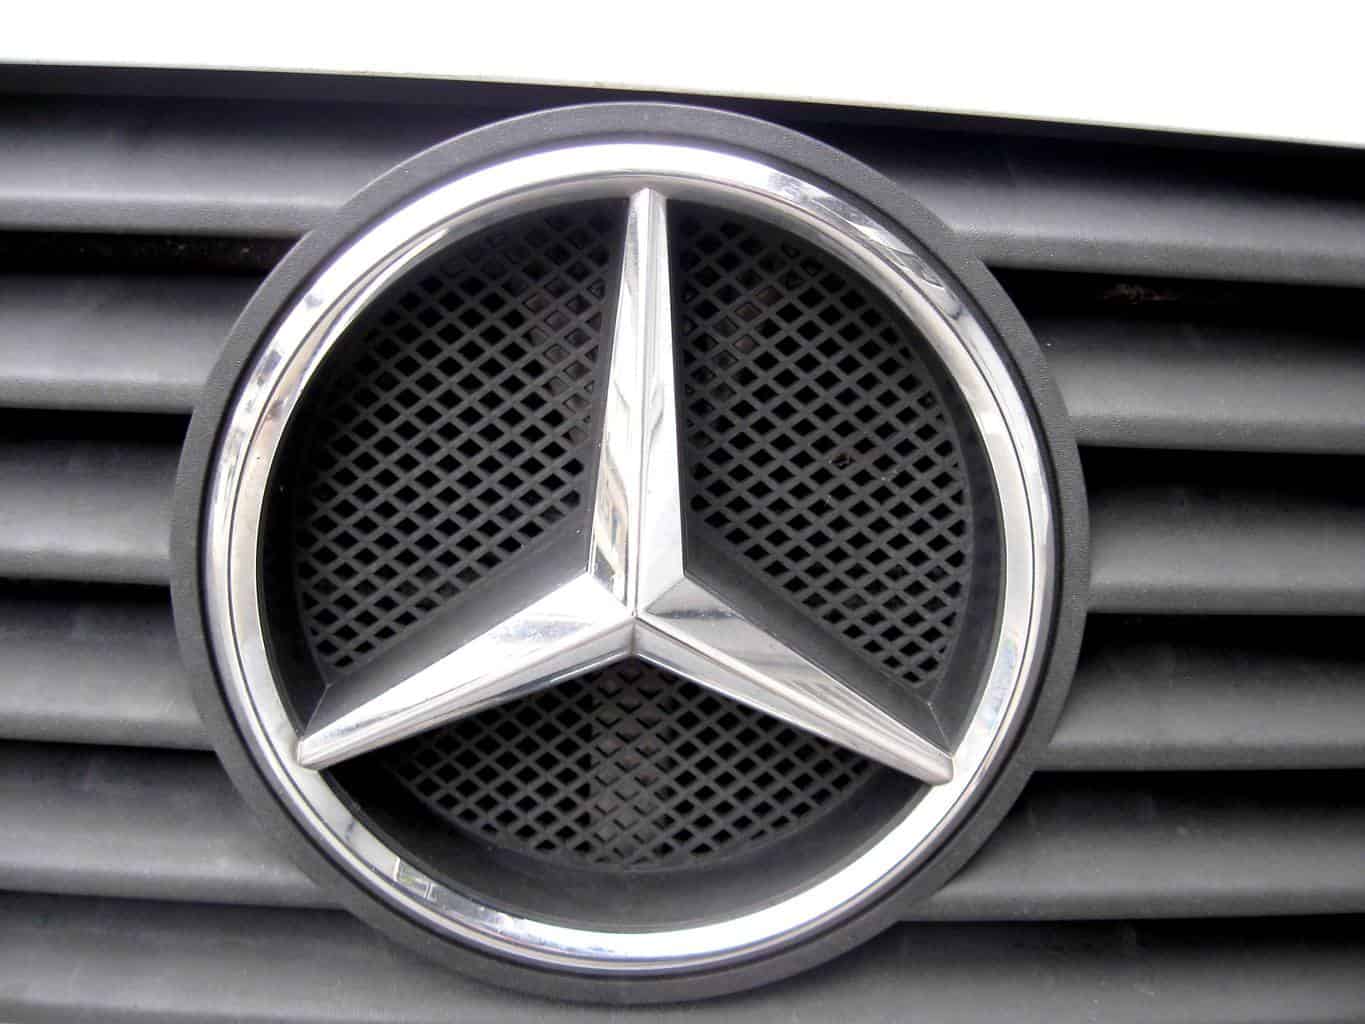 Mercedes Auto Title Loan - Phoenix Title Loans